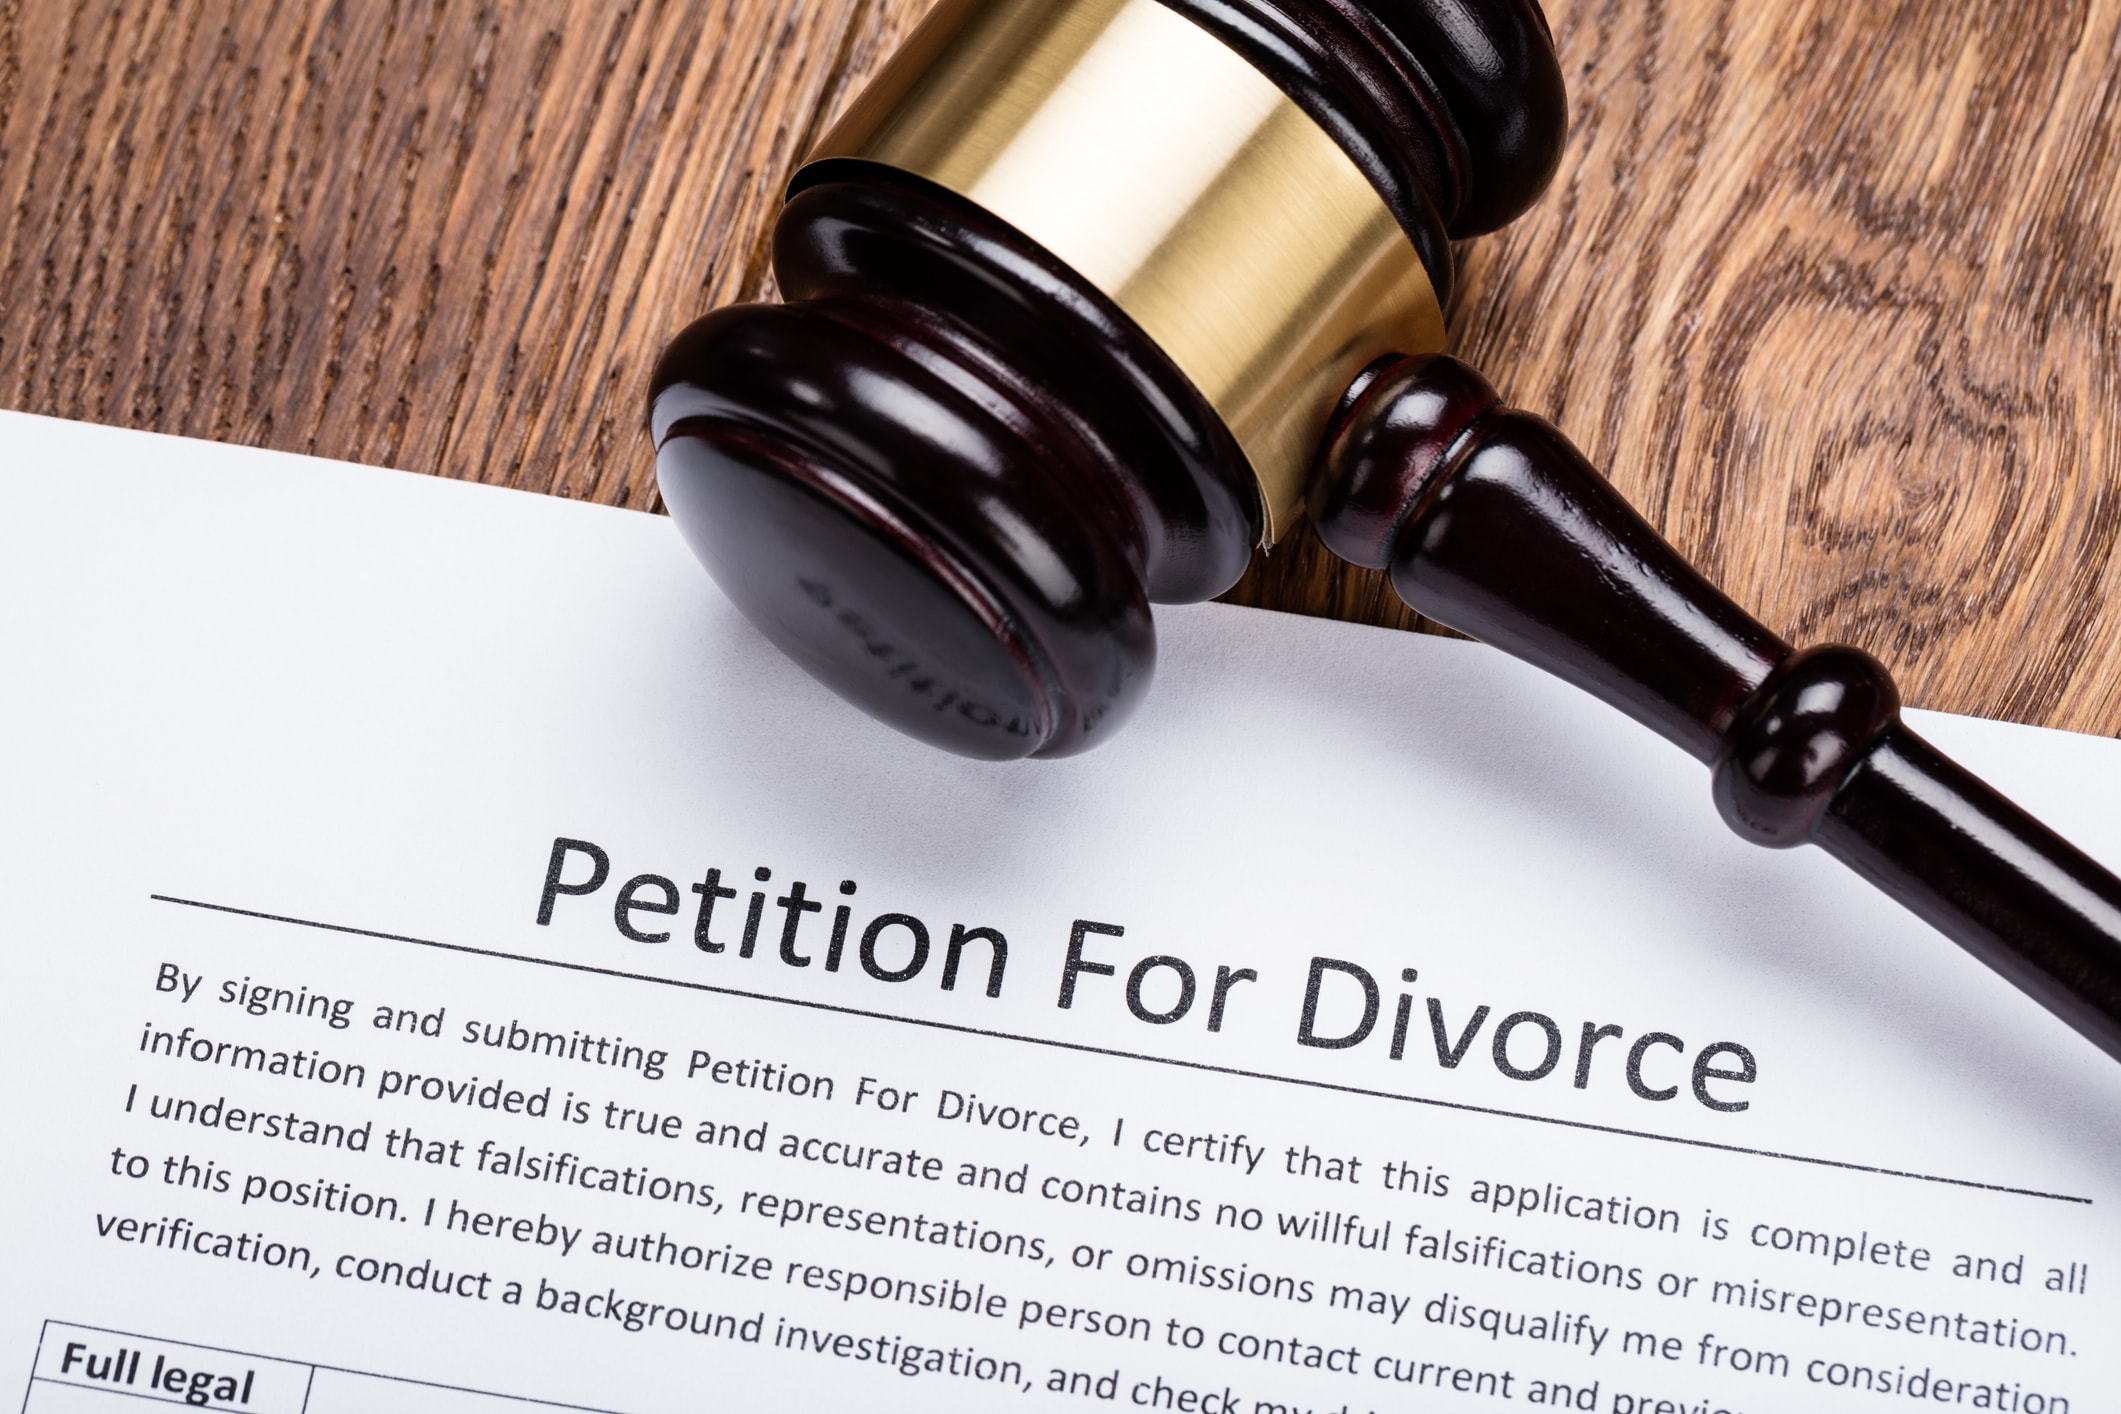 florida divorce laws regarding adultery